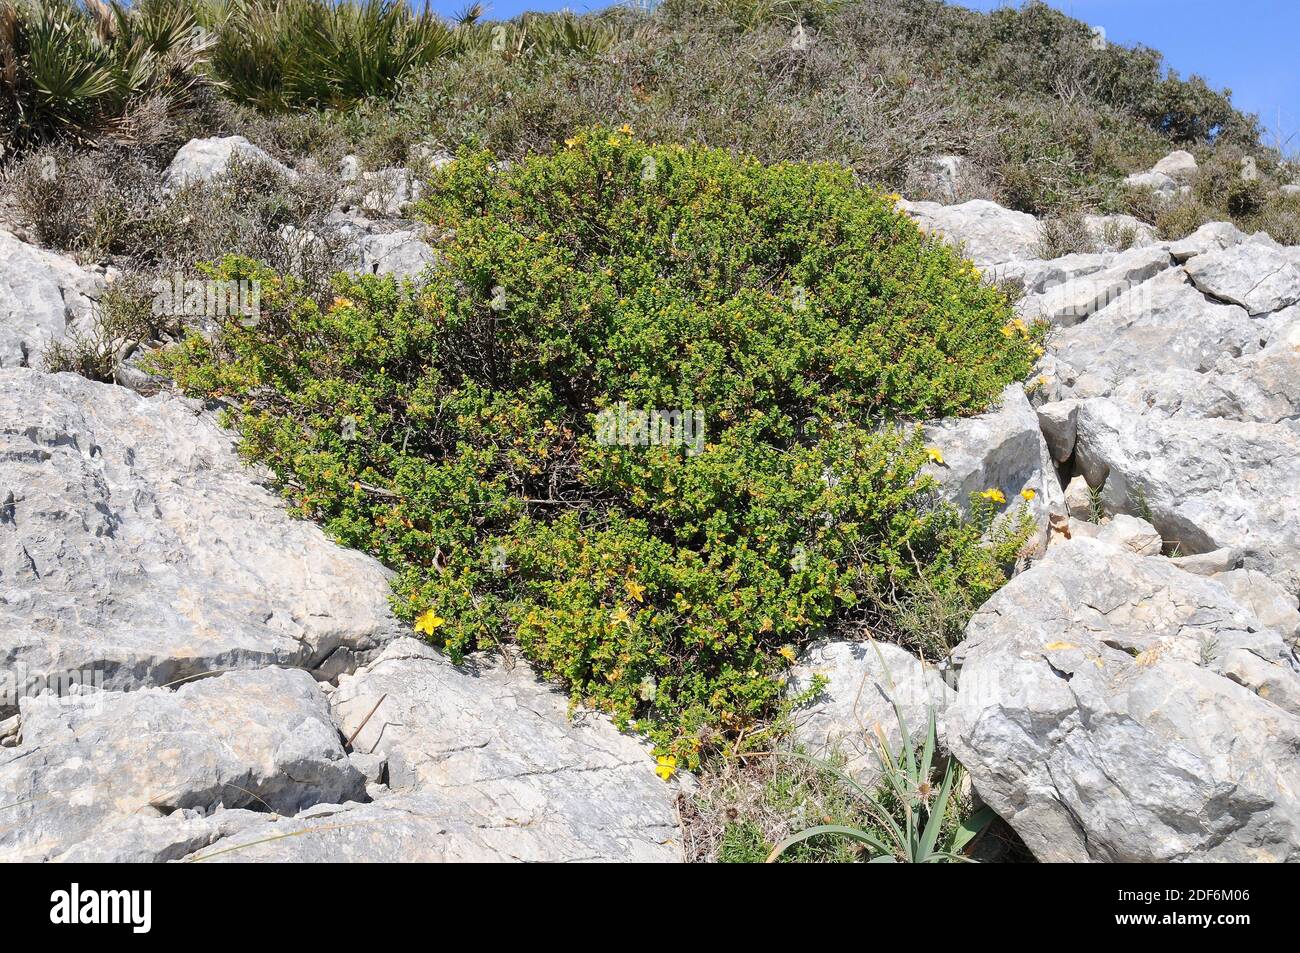 Estepa joana oder hiperico de Baleares (Hypericum balearicum) ist ein immergrüner Strauch, der auf den Balearen endemisch ist. Dieses Foto wurde in Serra de aufgenommen Stockfoto